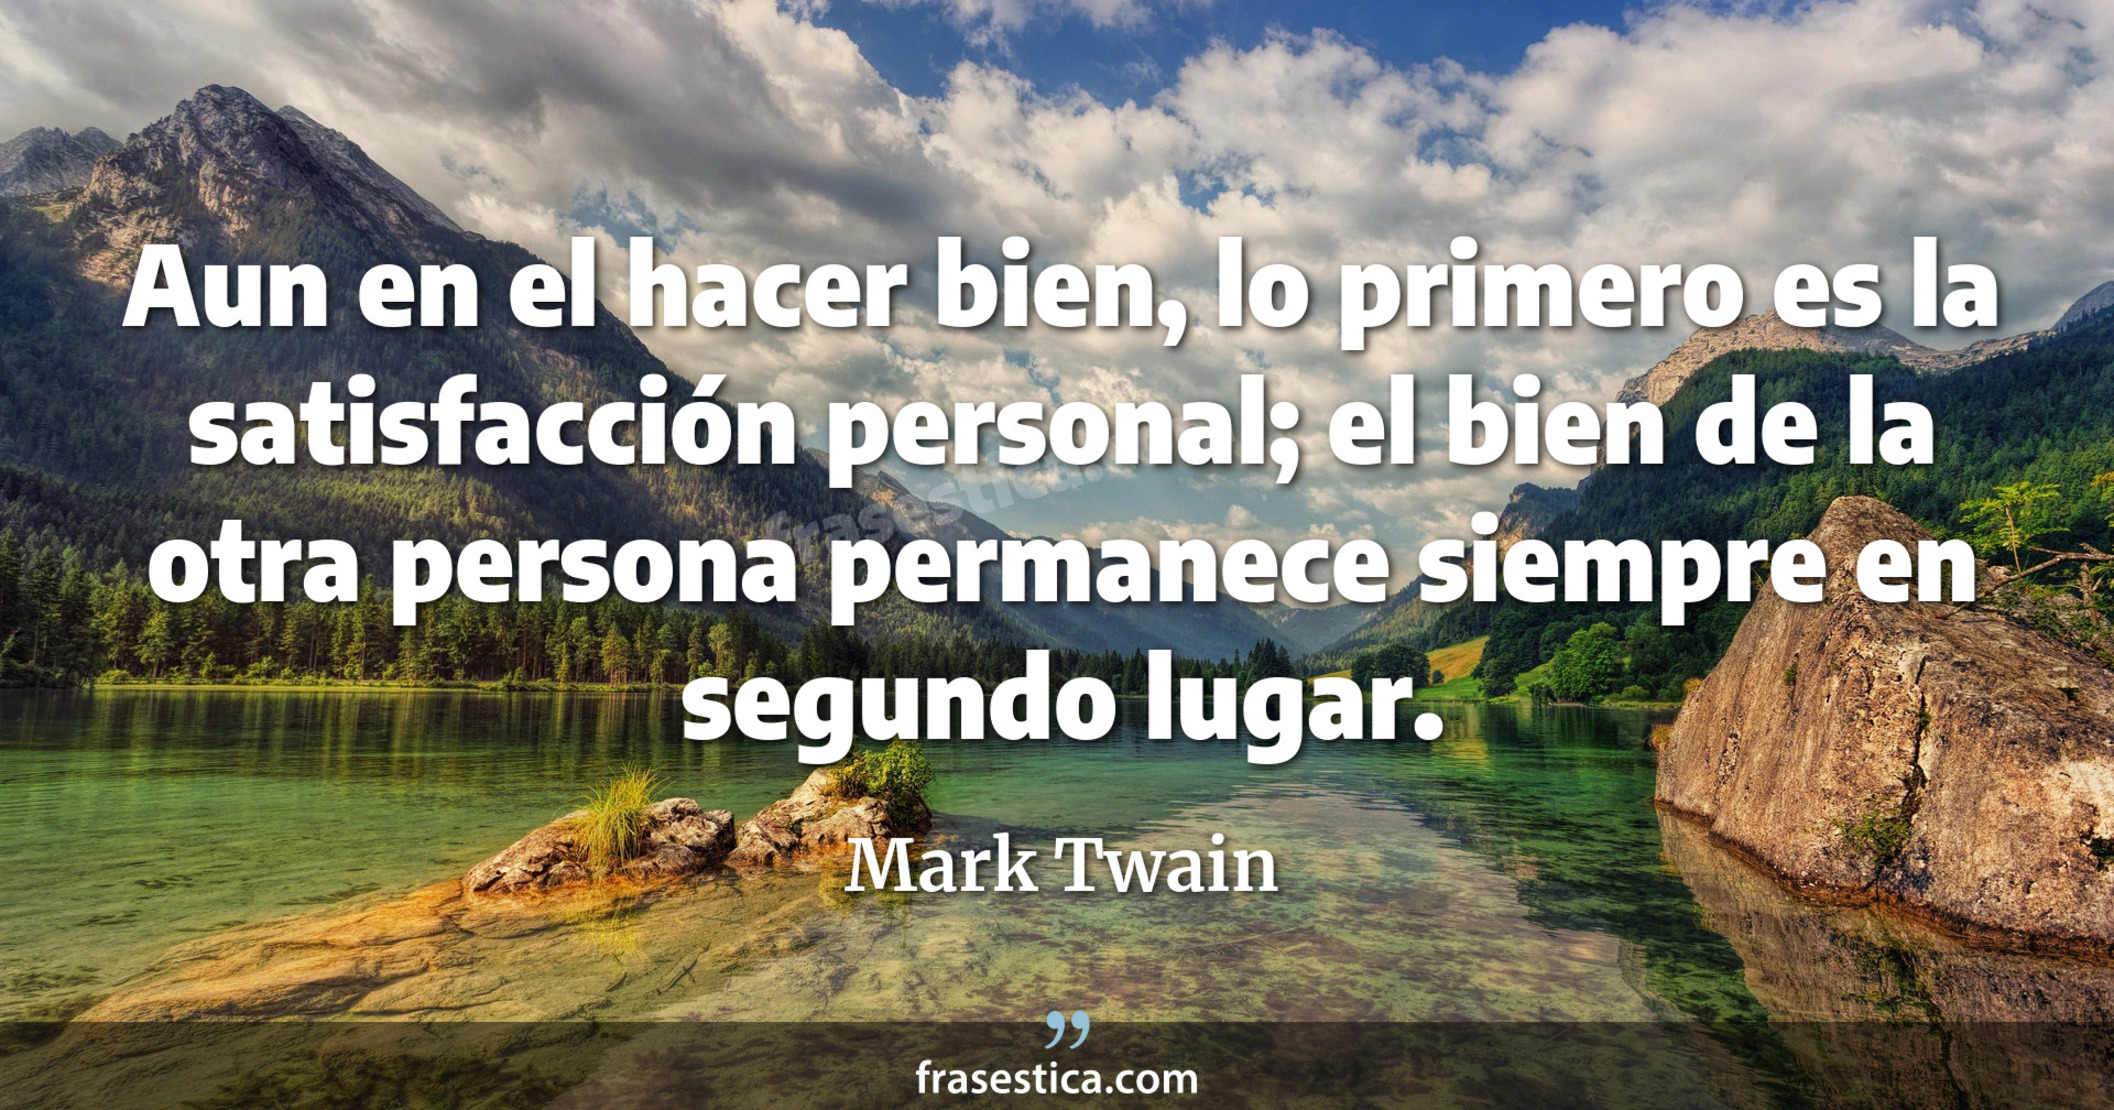 Aun en el hacer bien, lo primero es la satisfacción personal; el bien de la otra persona permanece siempre en segundo lugar. - Mark Twain